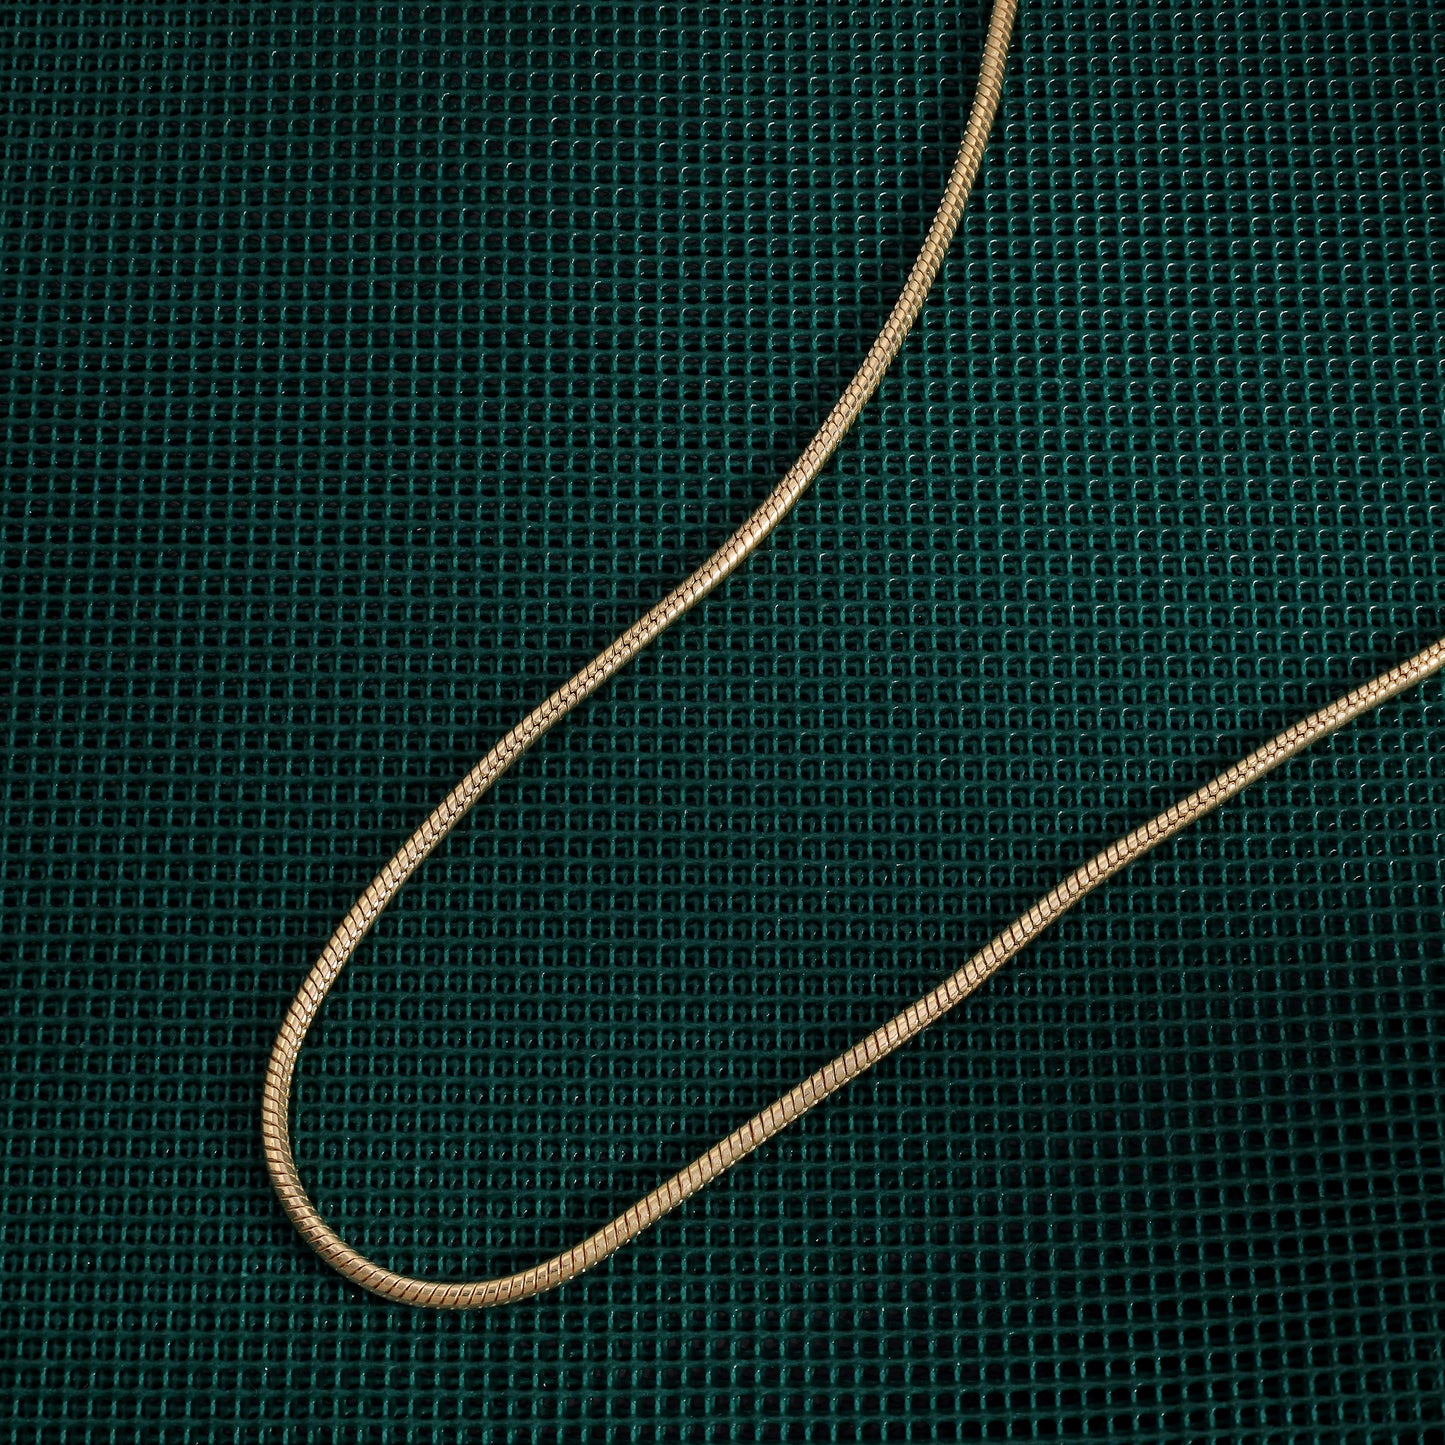 Vergoldete Snake Chain Schlangenkette 2,4mm 55cm lang 925 Sterling Silber (K811) - Taipan Schmuck